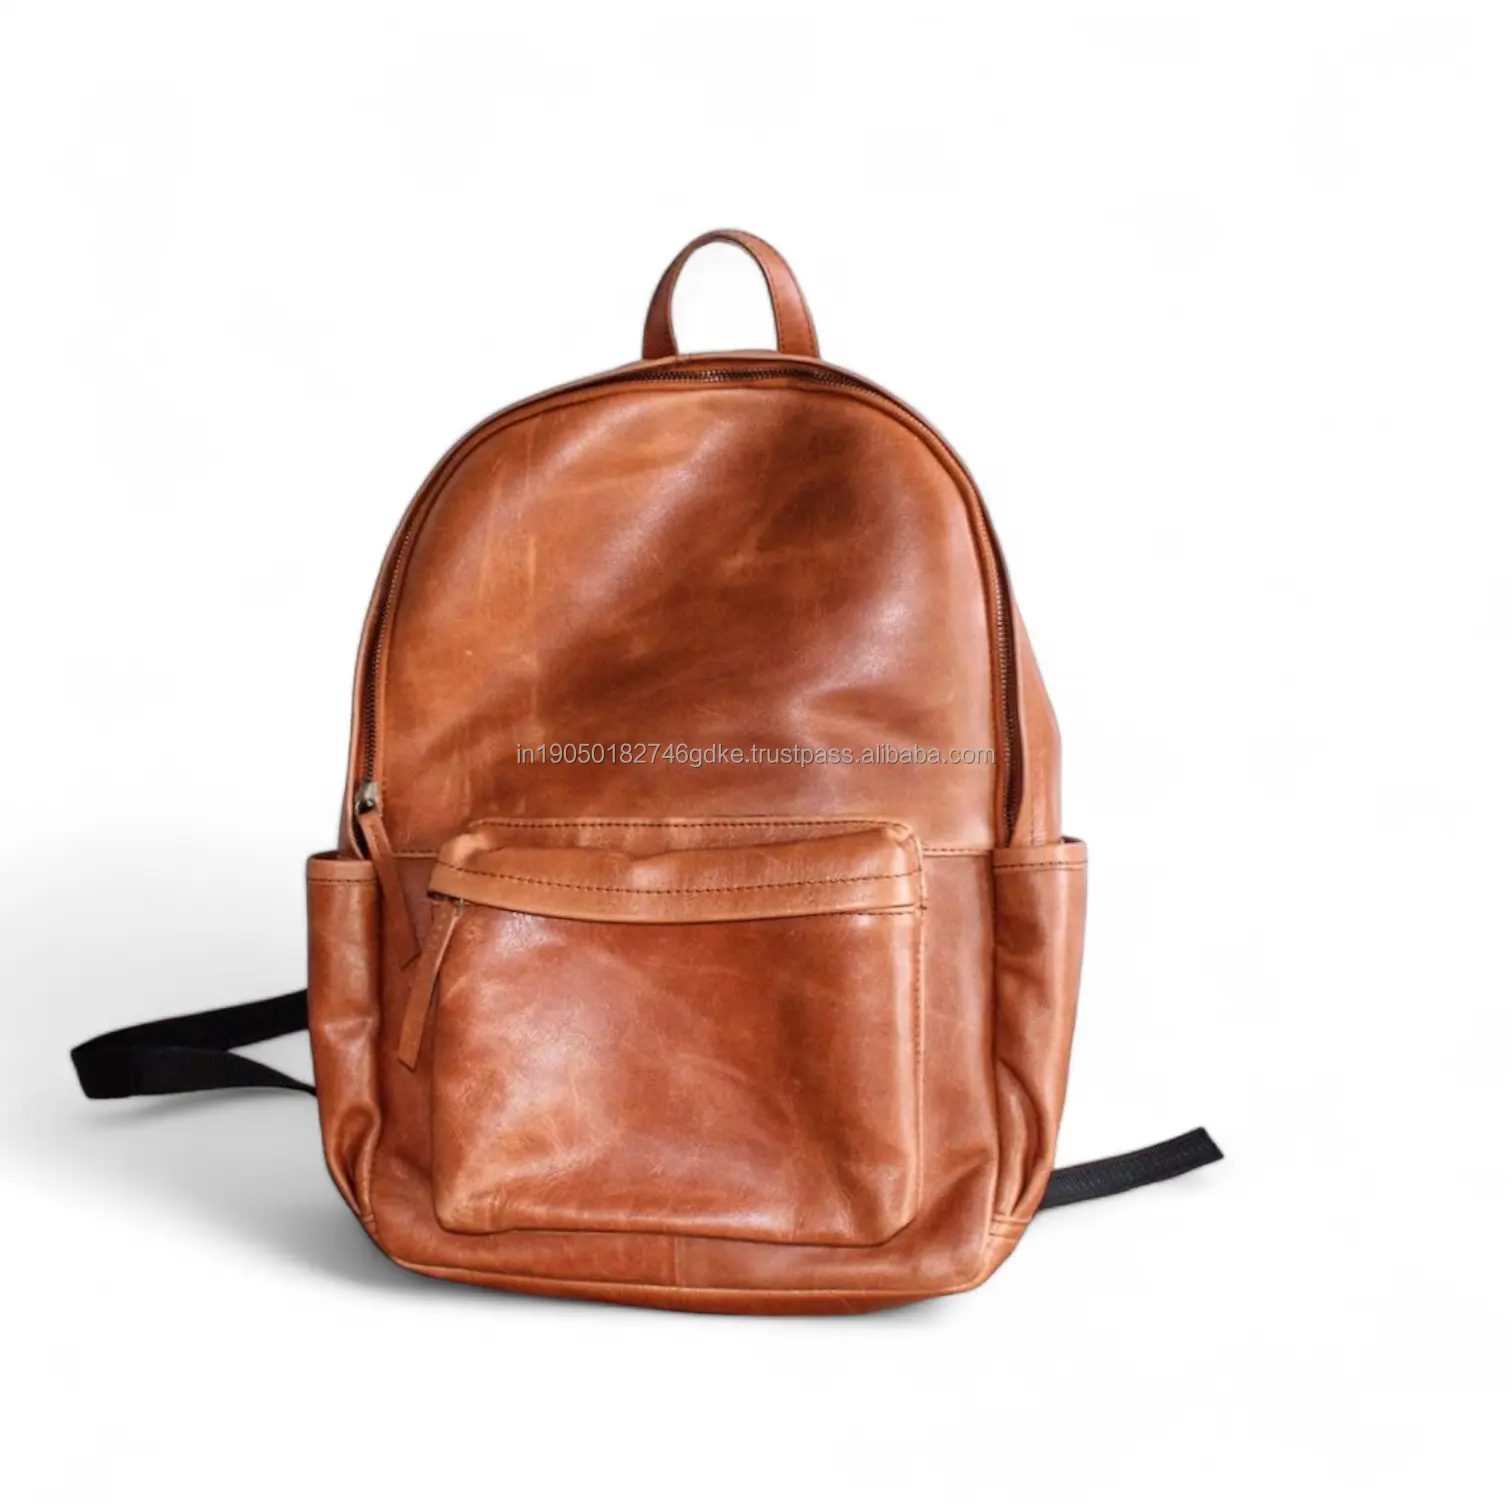 ALBORZ sac à dos pour ordinateur portable haute capacité en cuir véritable avec une fermeture à glissière en métal est parfait pour les écoliers et les filles.